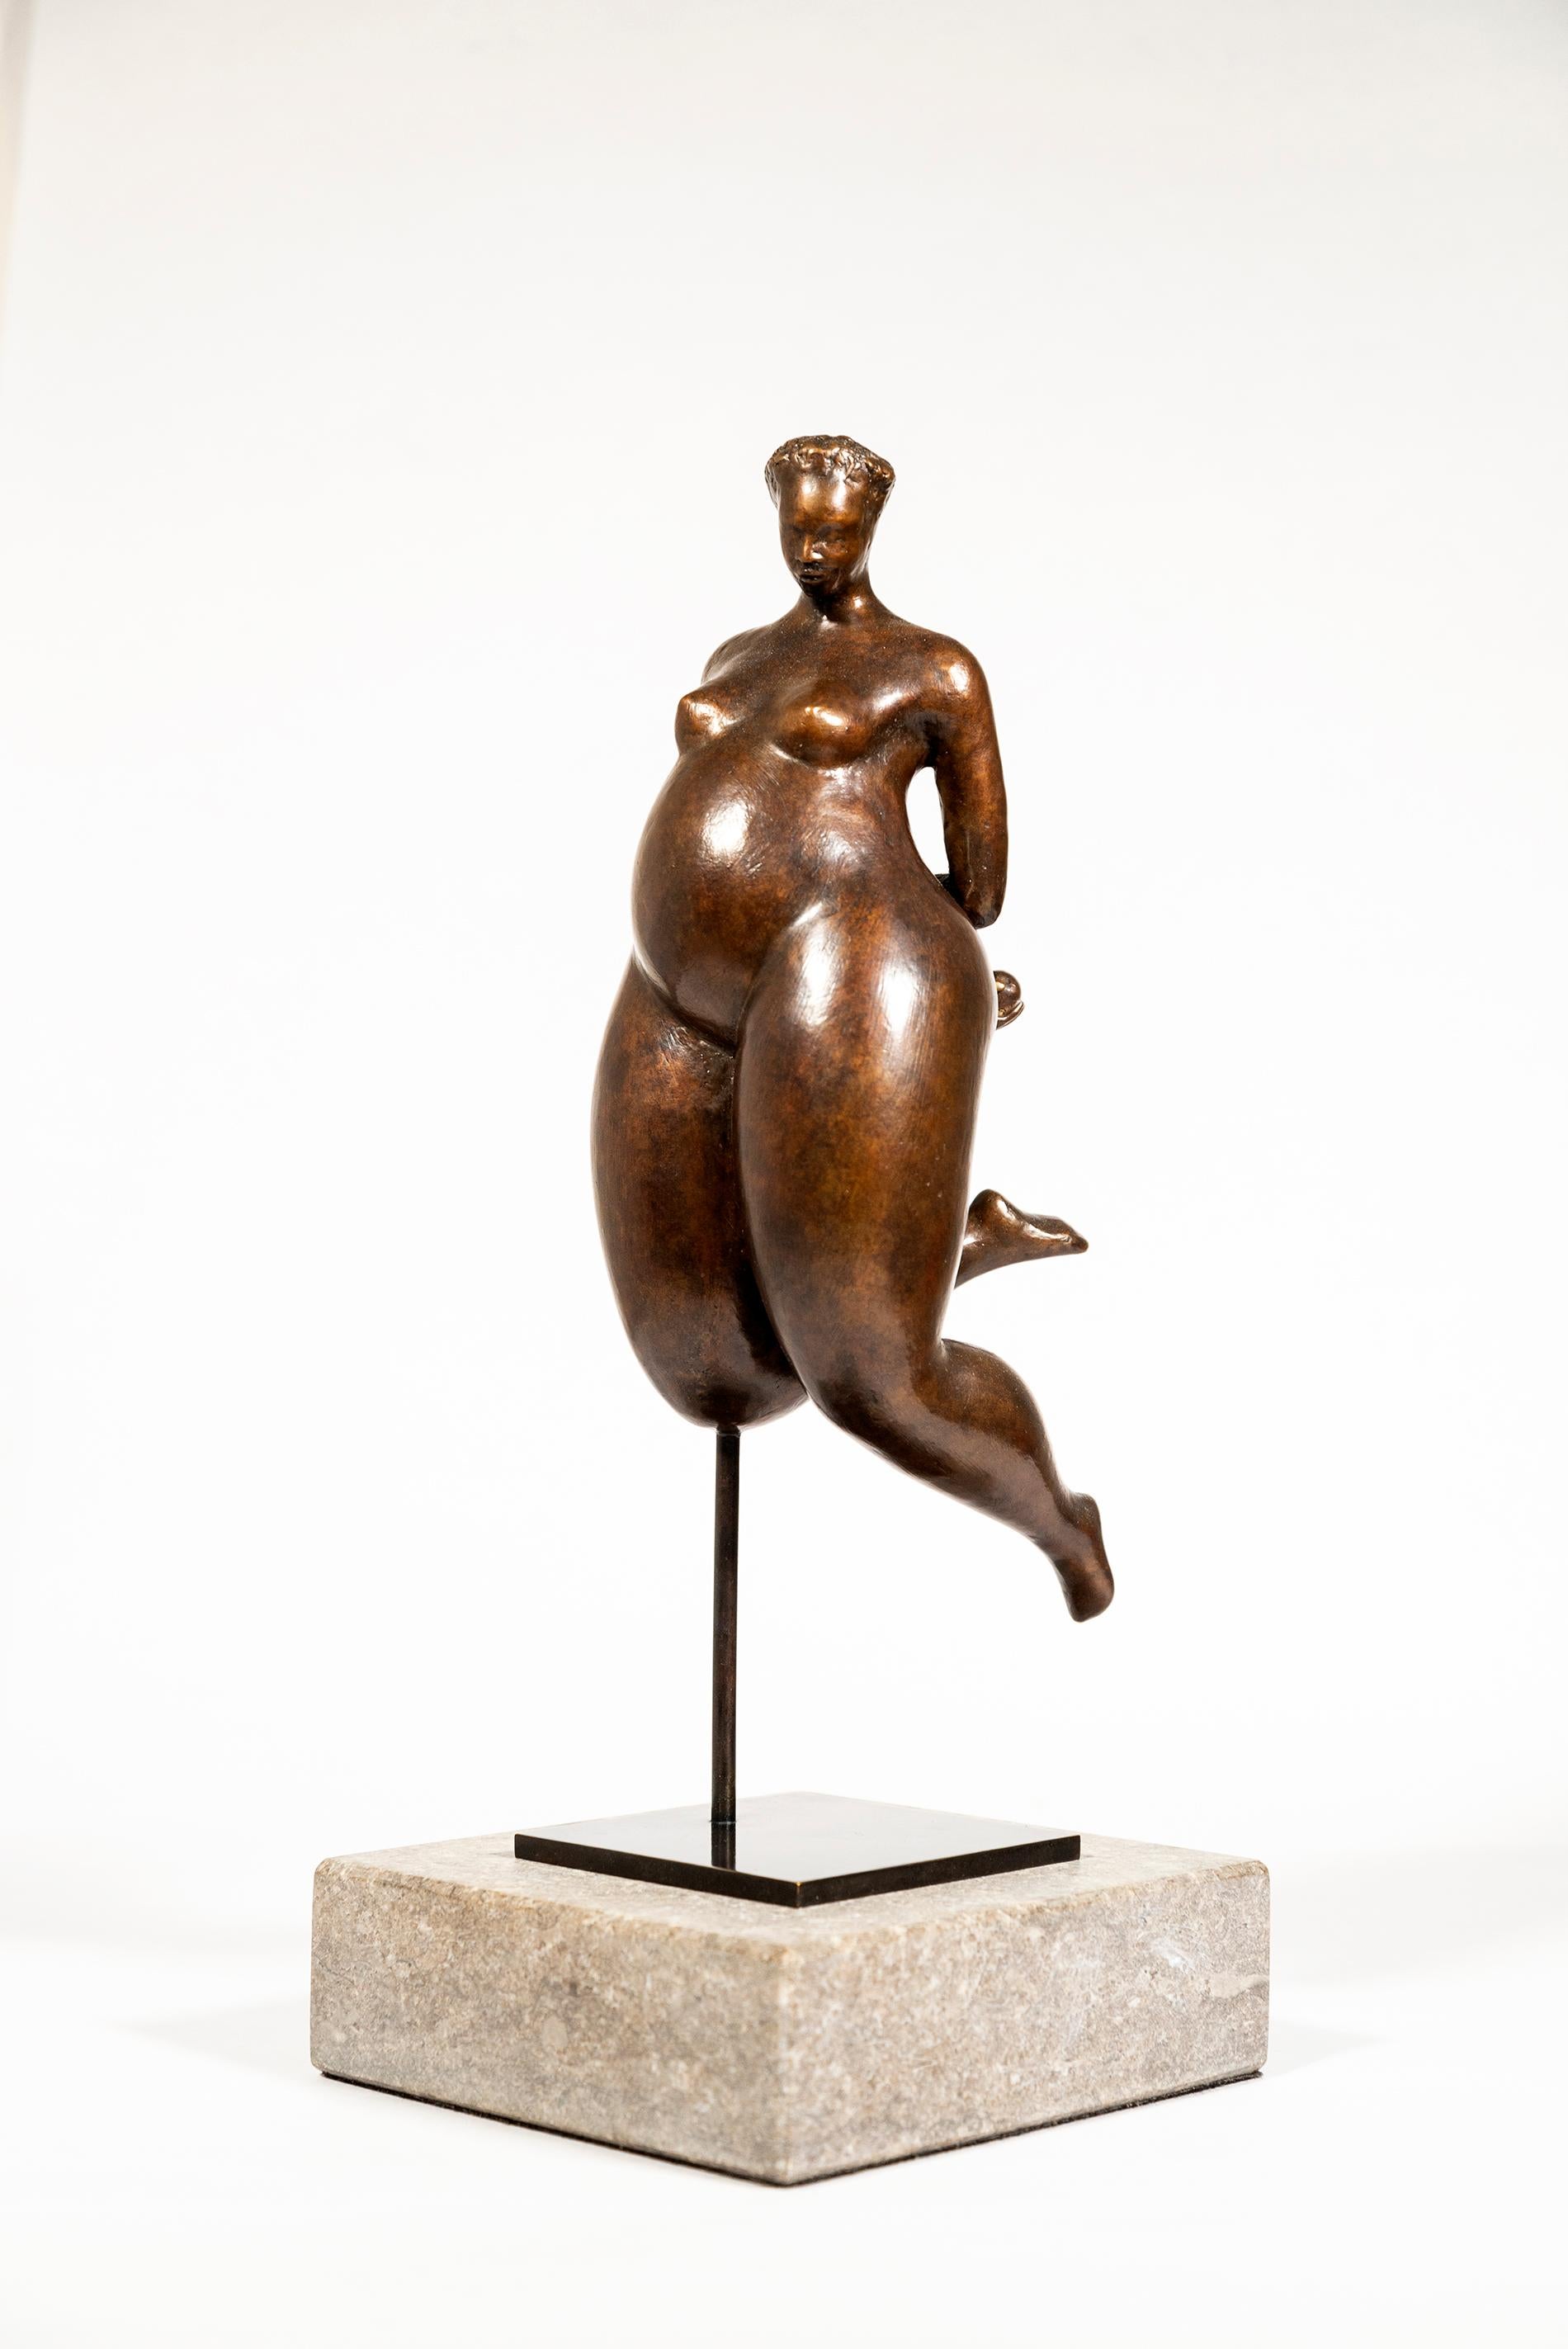 Zaliatou 3/8 - female, figurative, nude, expressive, modern, bronze sculpture - Sculpture by Paul Duval